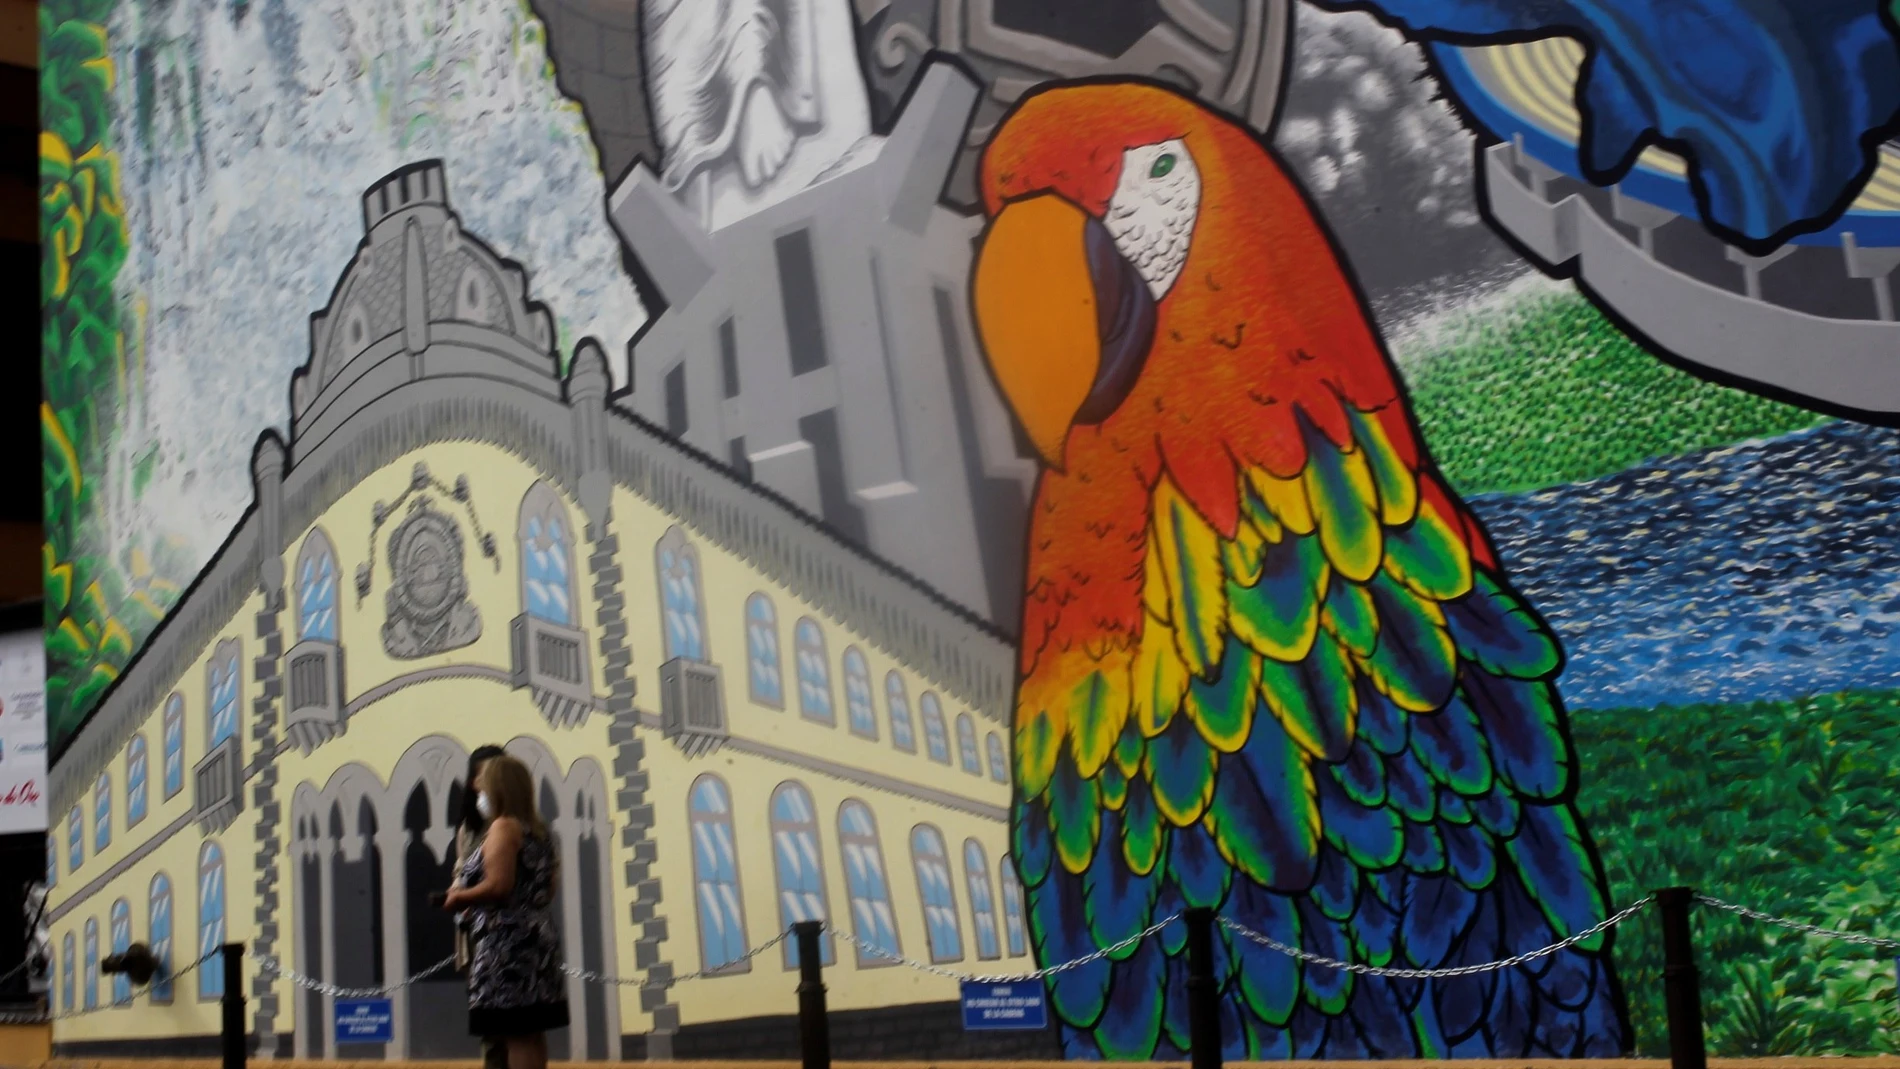 AME6263. TEGUCIGALPA (HONDURAS), 22/12/2020.- Dos mujeres caminan frente a un mural que destaca el turismo en Honduras, hoy en Tegucigalpa. EFE/Gustavo Amador